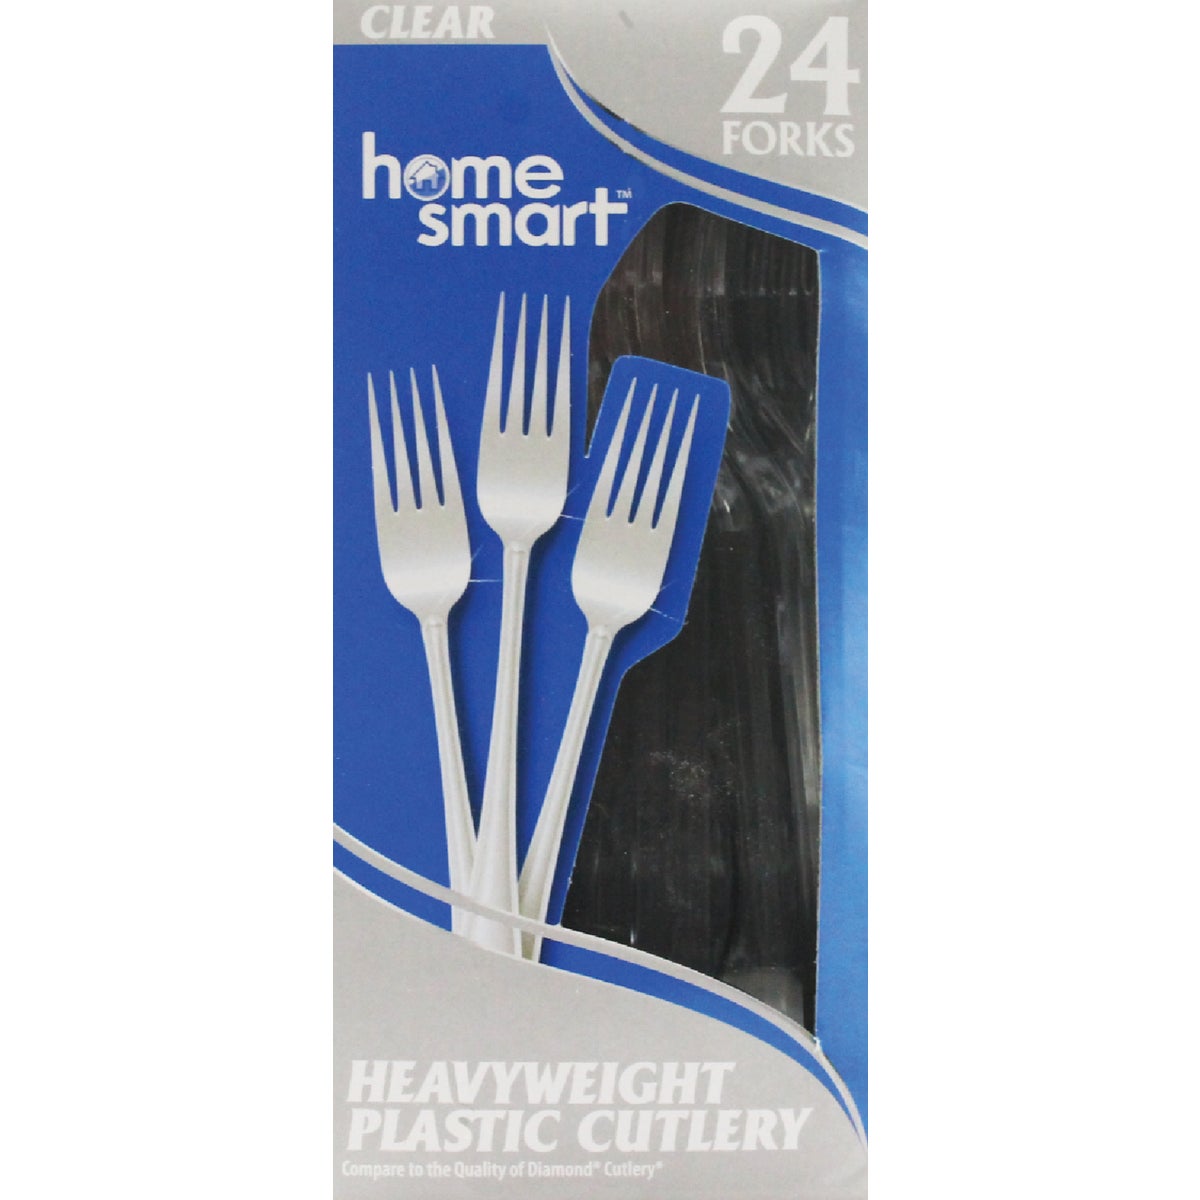 Item 970623, Home Smart plastic forks.